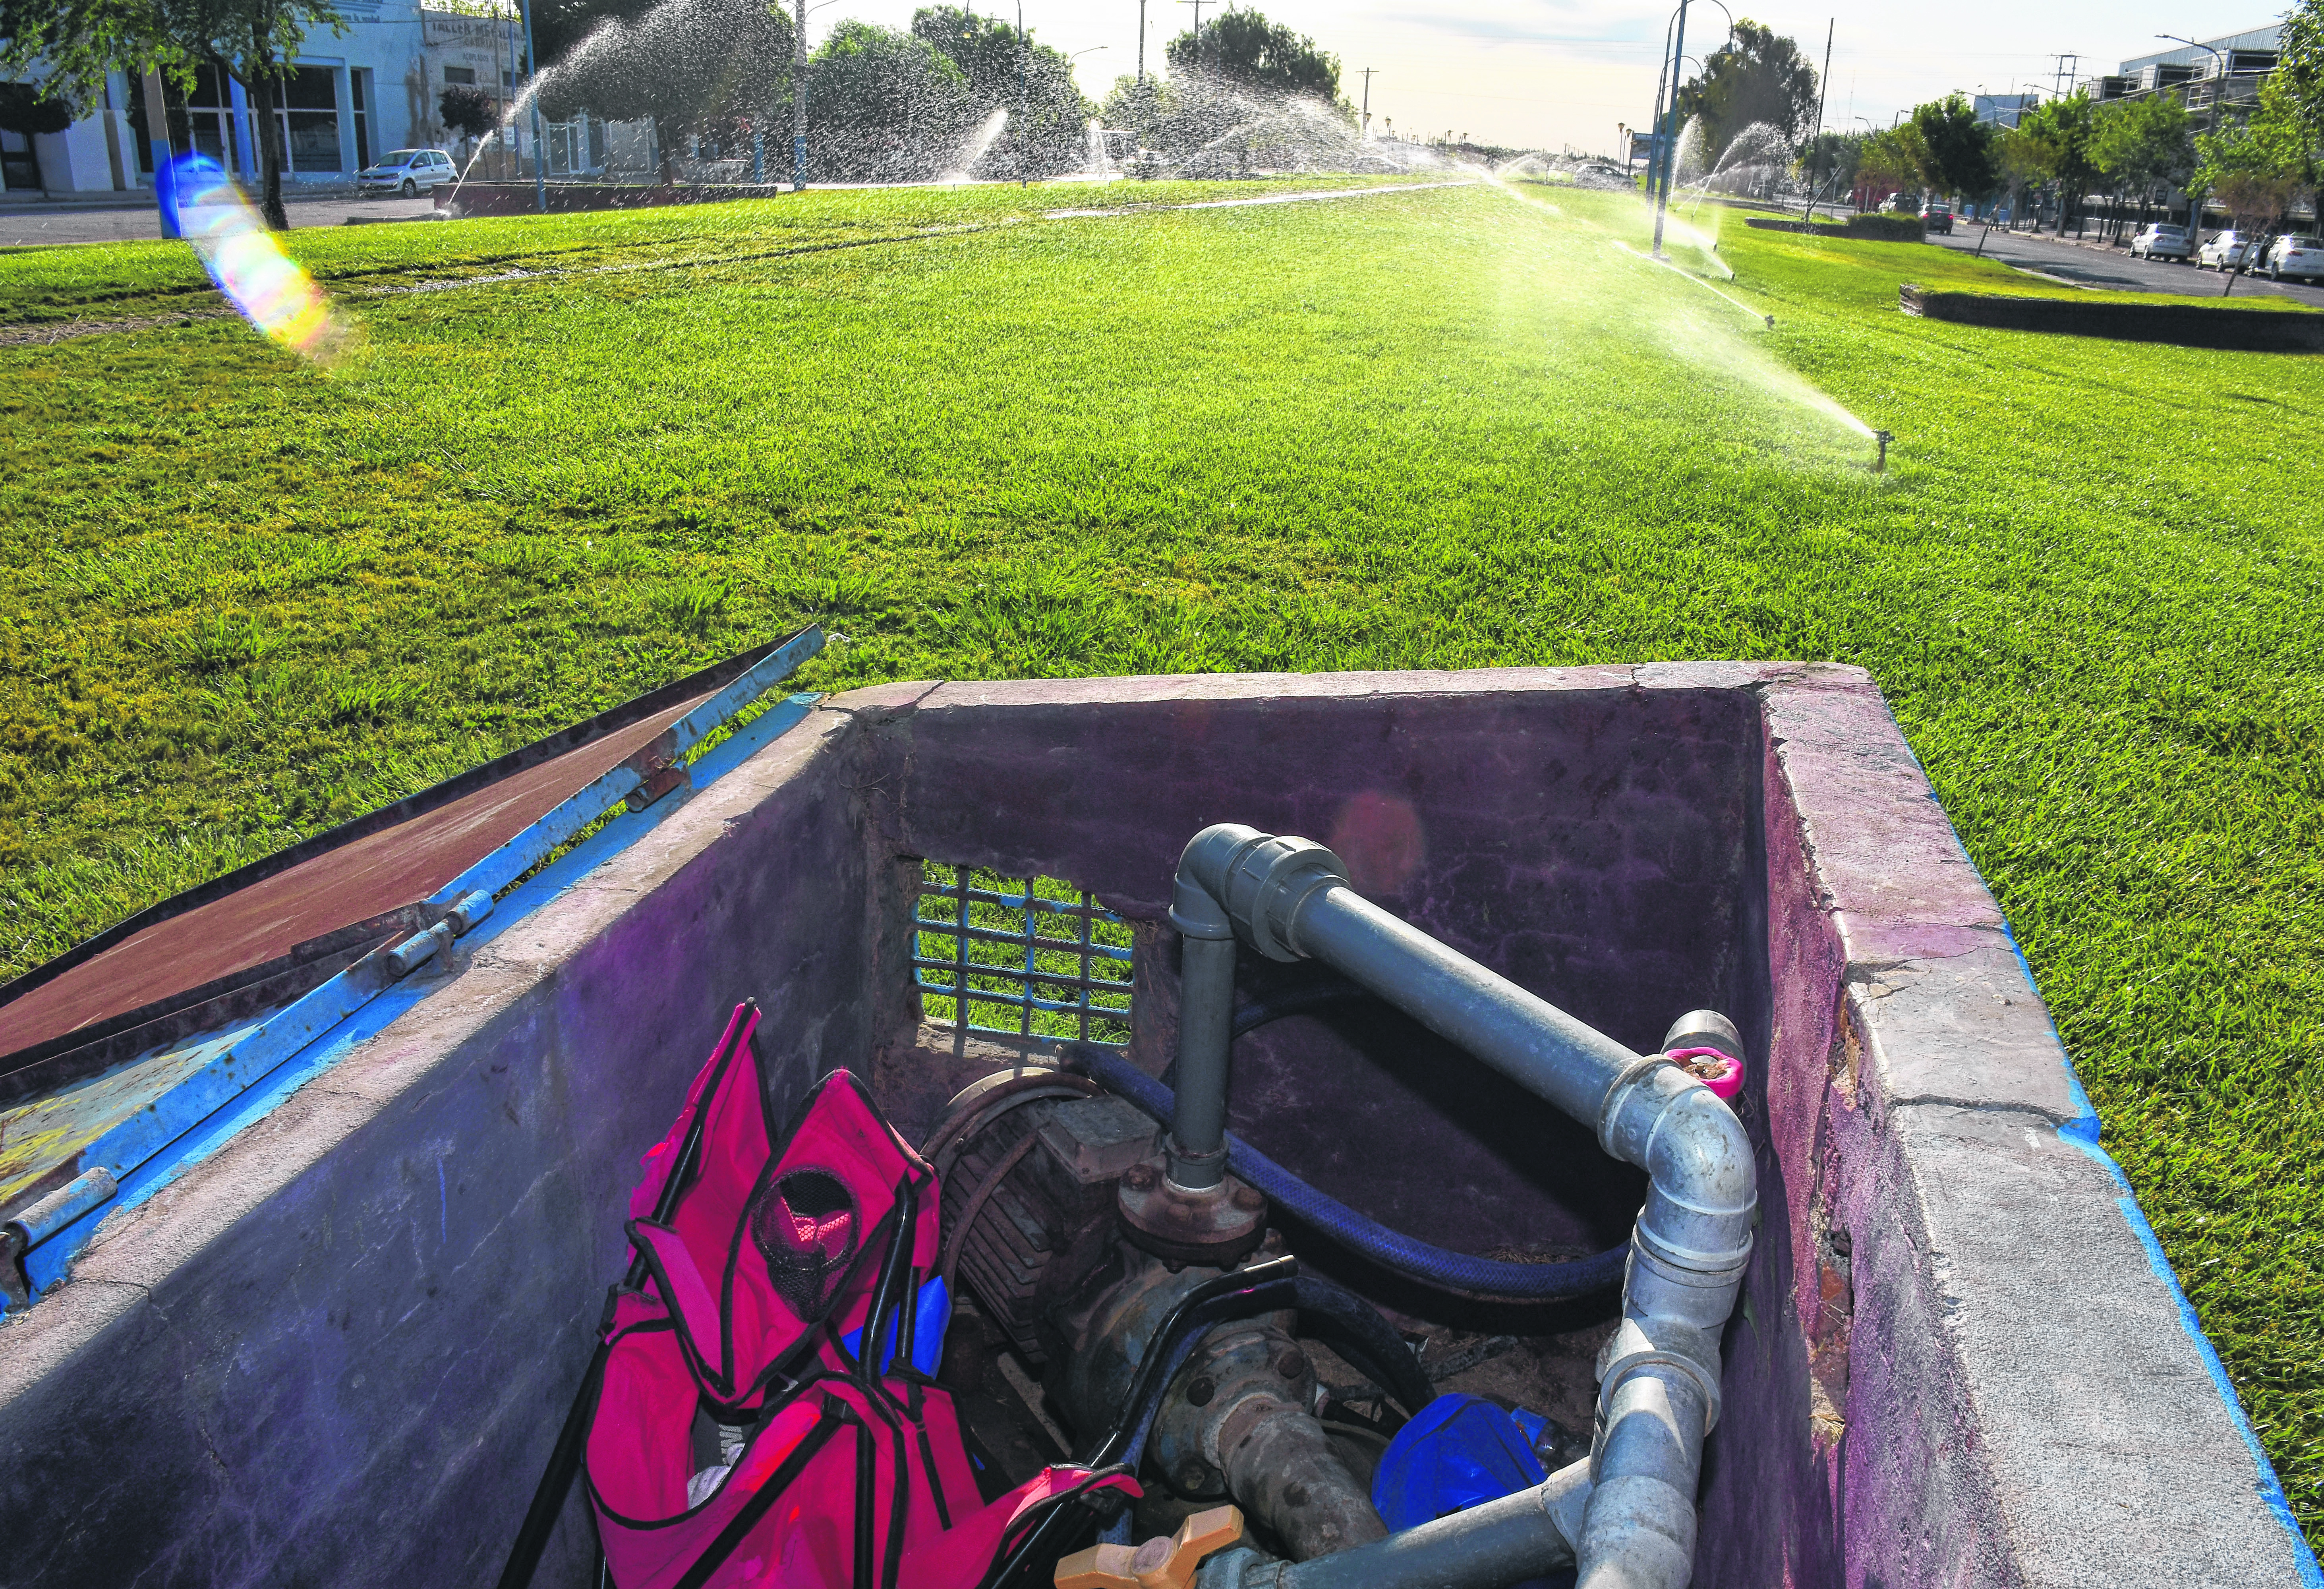 Los sistemas de riego de las plazas  son otro objetivo de los ladrones.  Foto Andrés Maripe. 